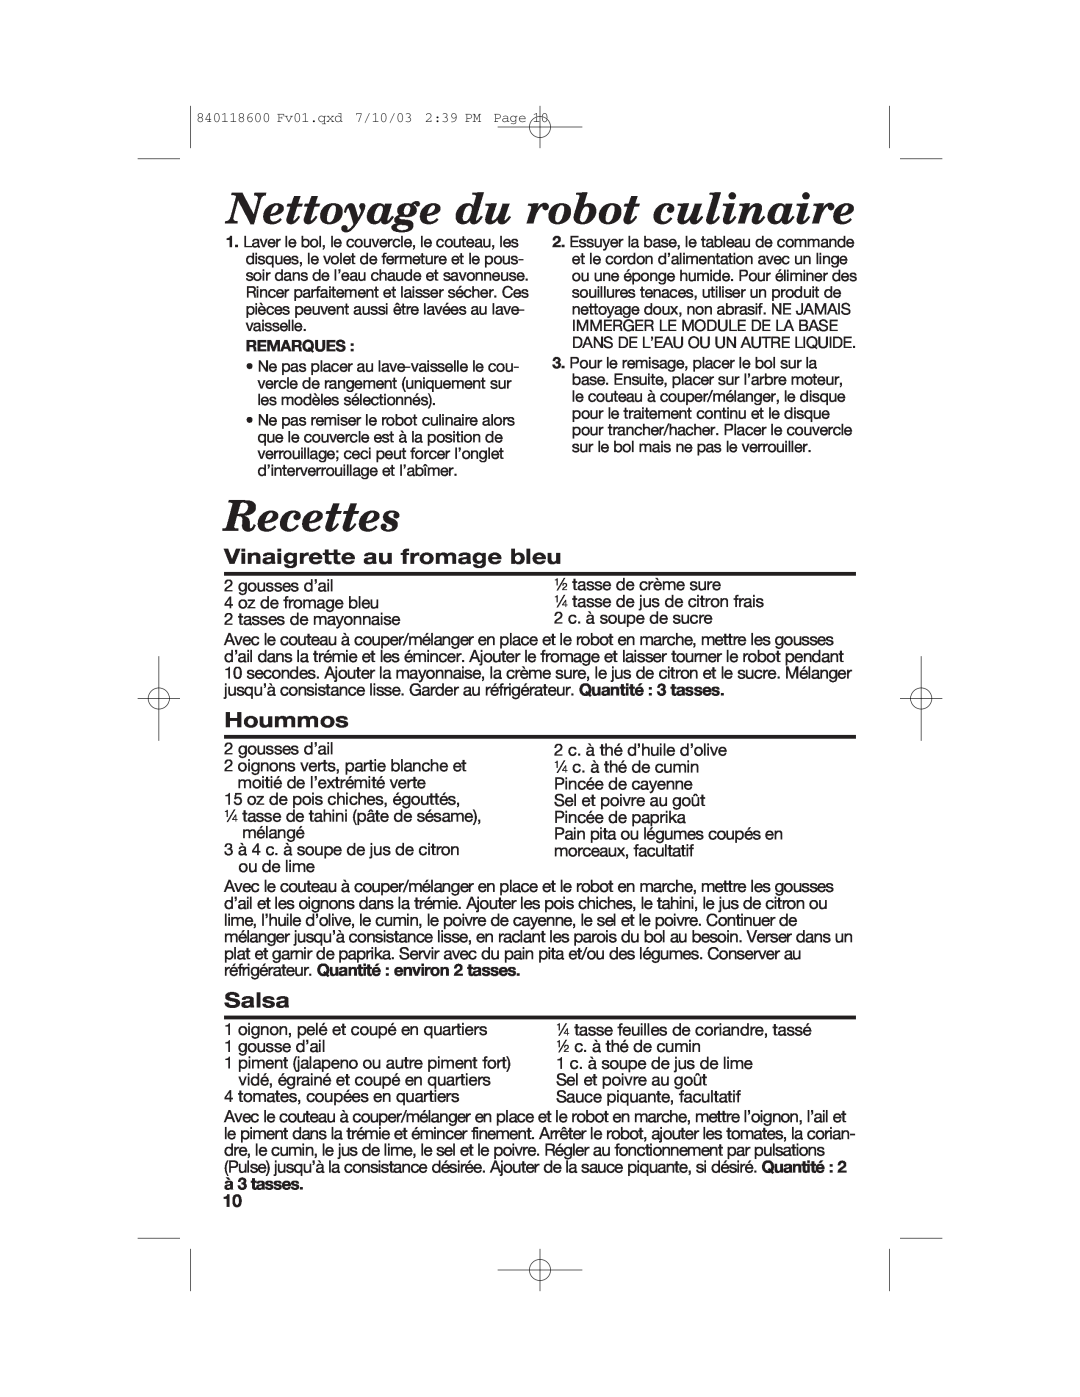 Hamilton Beach 70550RC manual Nettoyage du robot culinaire, Recettes, Vinaigrette au fromage bleu, Hoummos, Salsa 